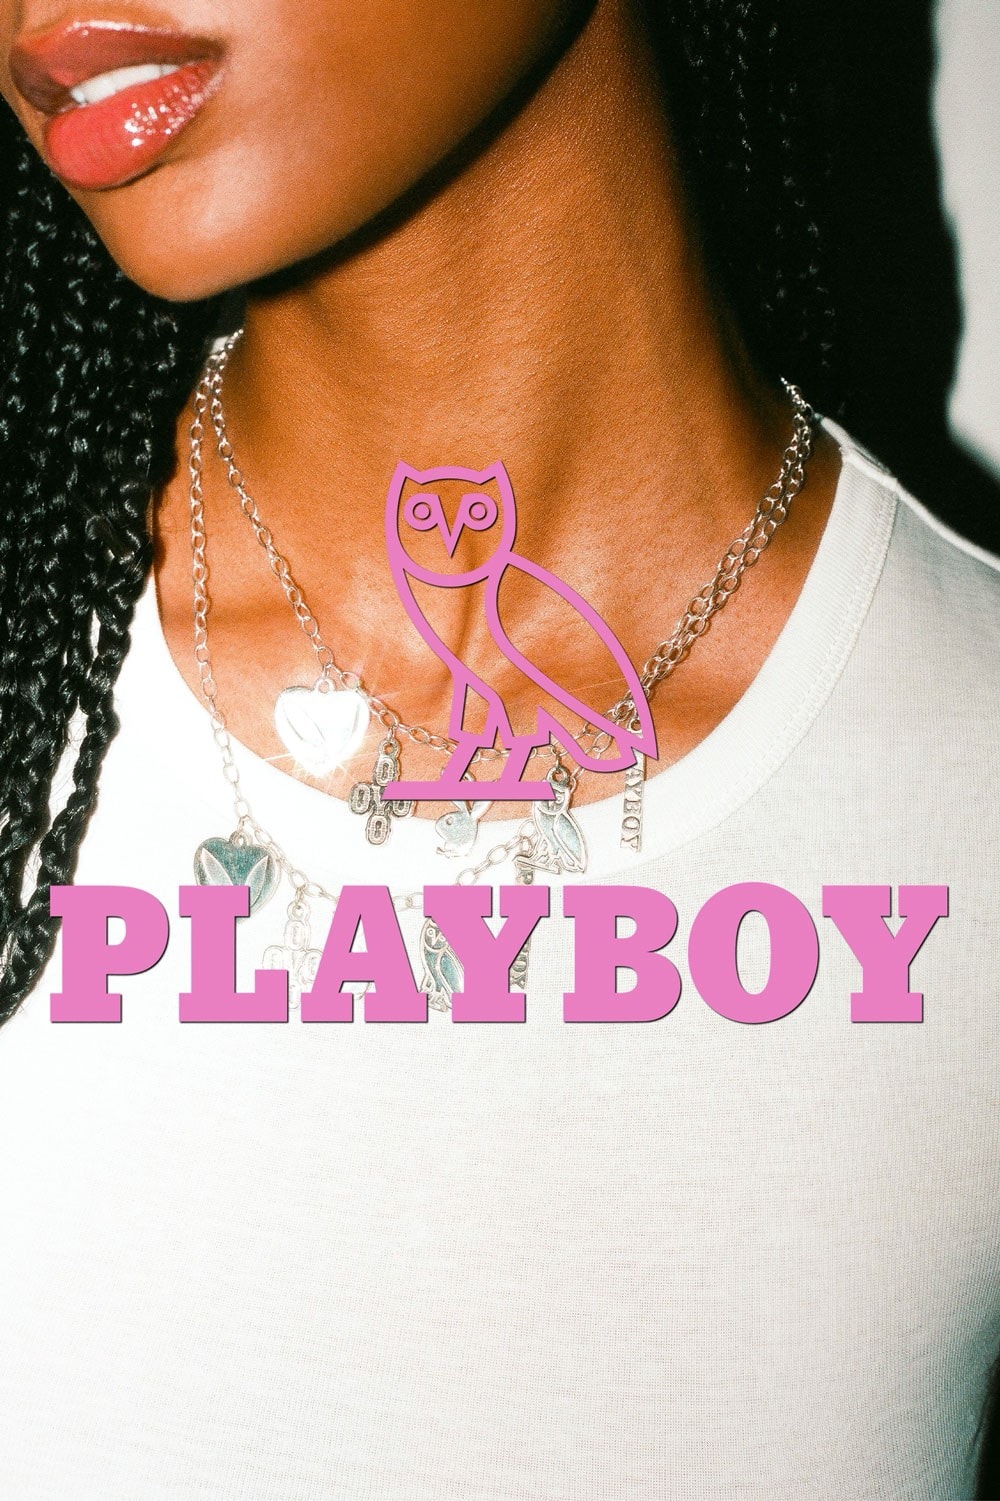 Drake 個人品牌 OVO 攜手 Playboy 打造最新聯名別注系列「Symbols of Prestige」